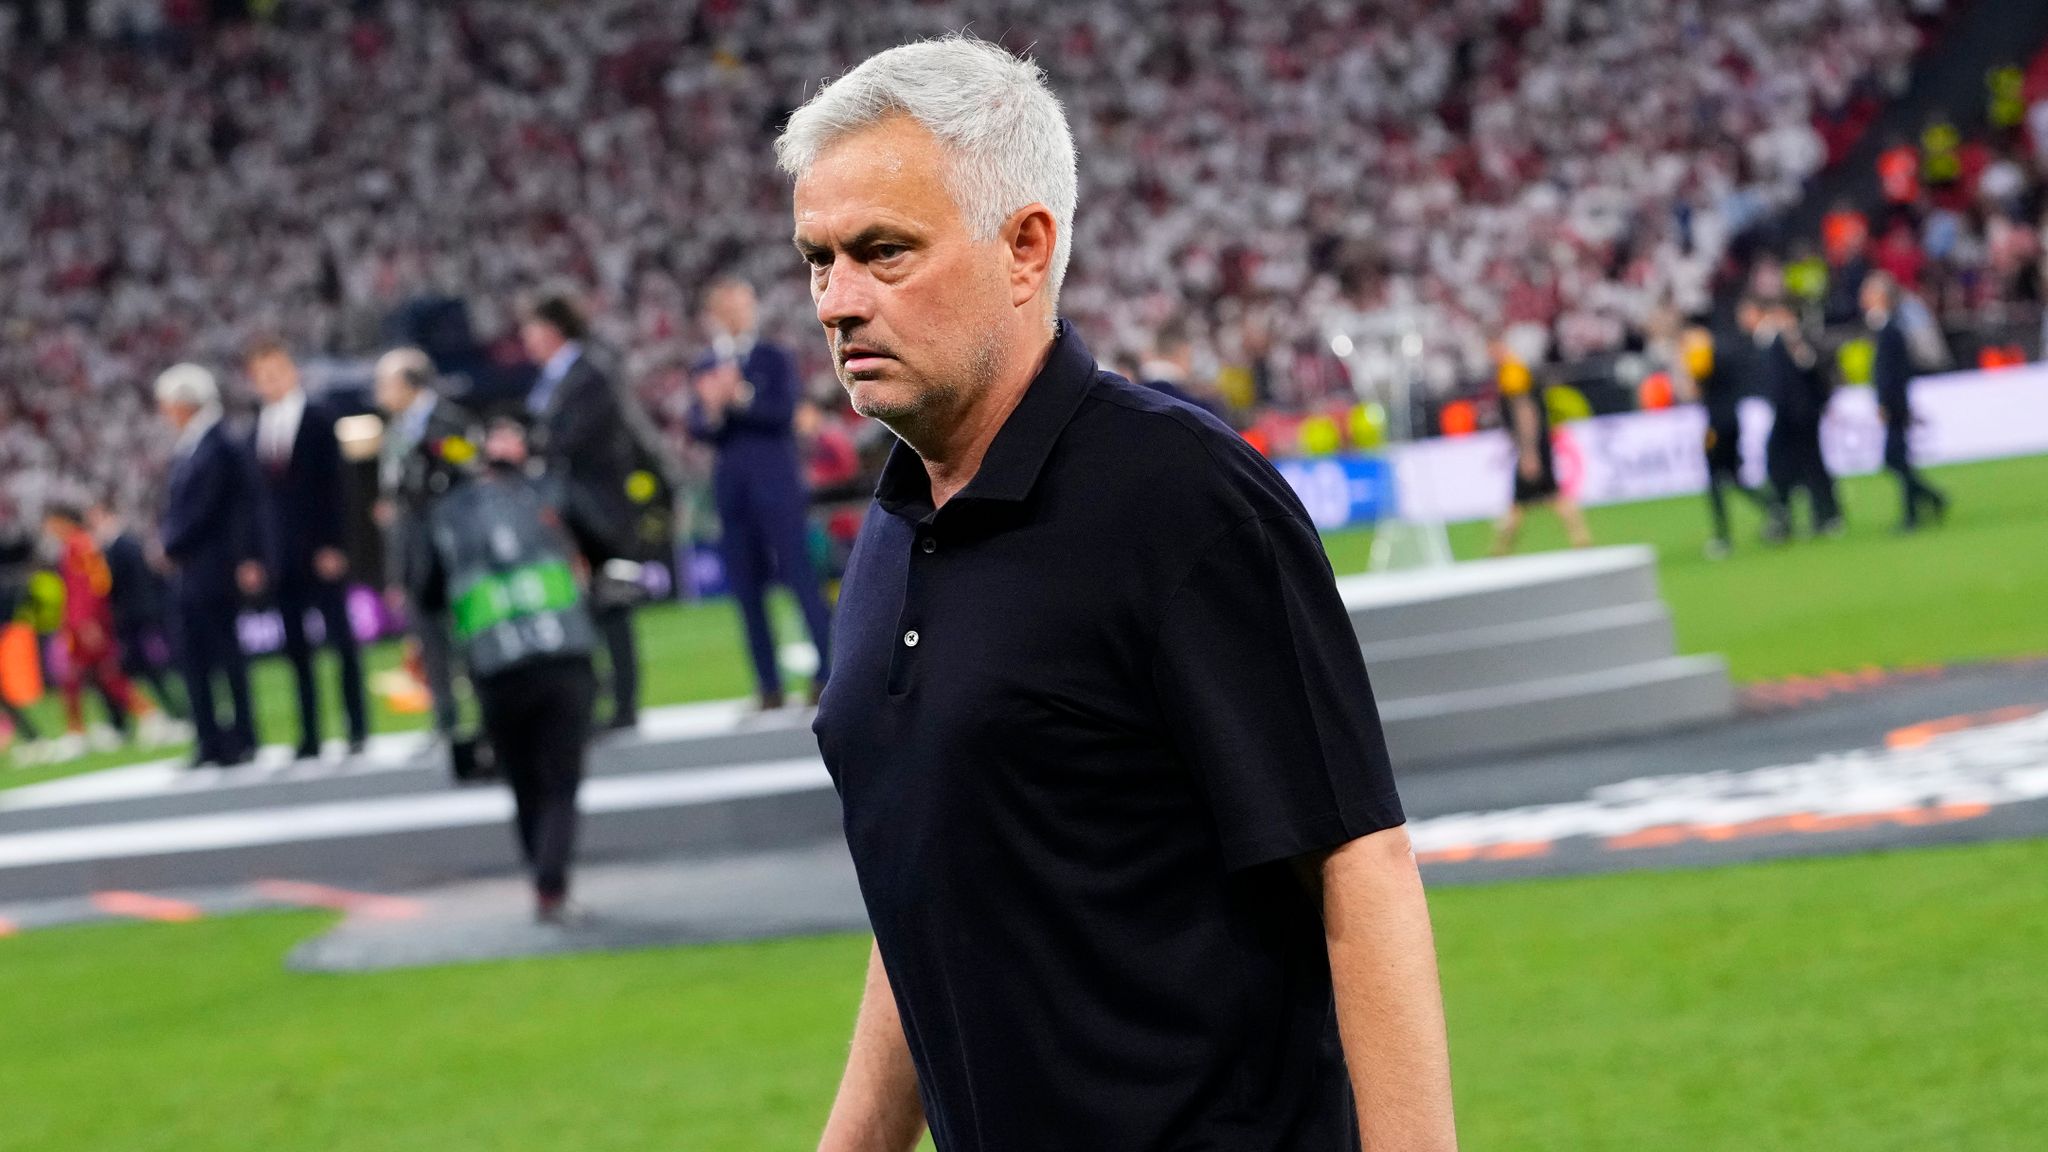 Jose Mourinho Roma dan ayrılacak mı? Maç sonu açıkladı...